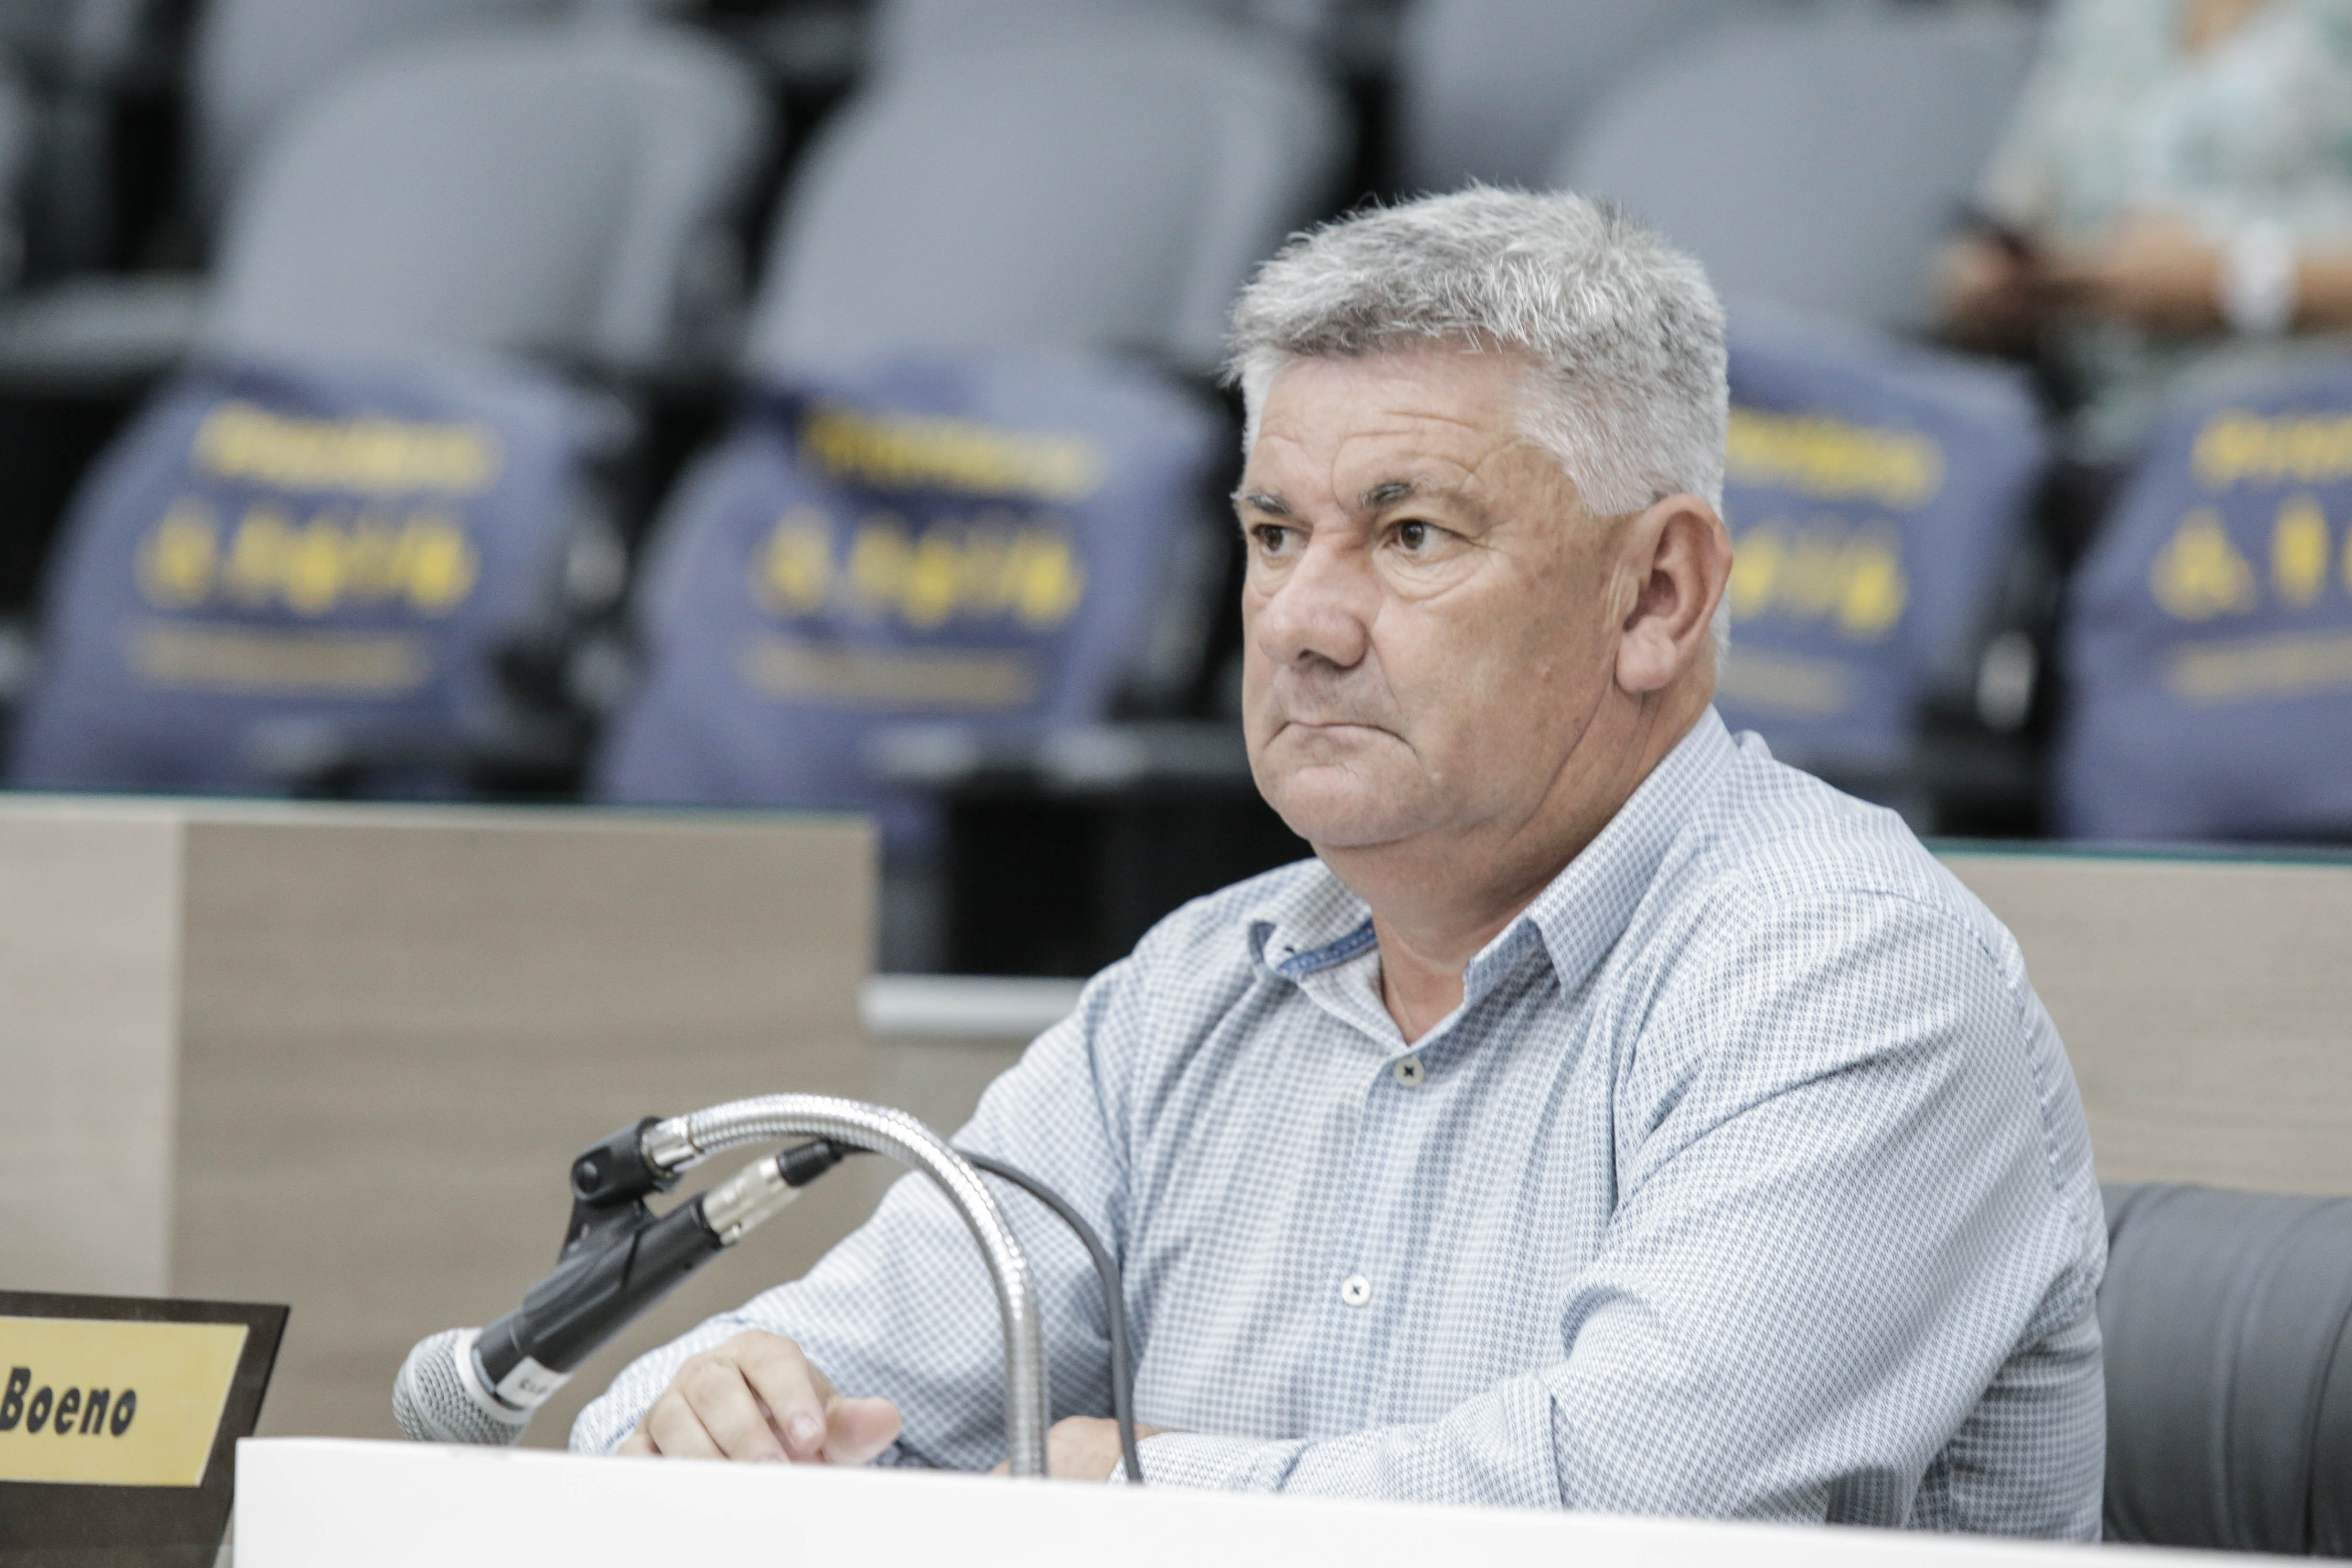 29/03/2019 - Vereador Nor Boeno encaminha mais de dez pedidos à Prefeitura somente esta semana